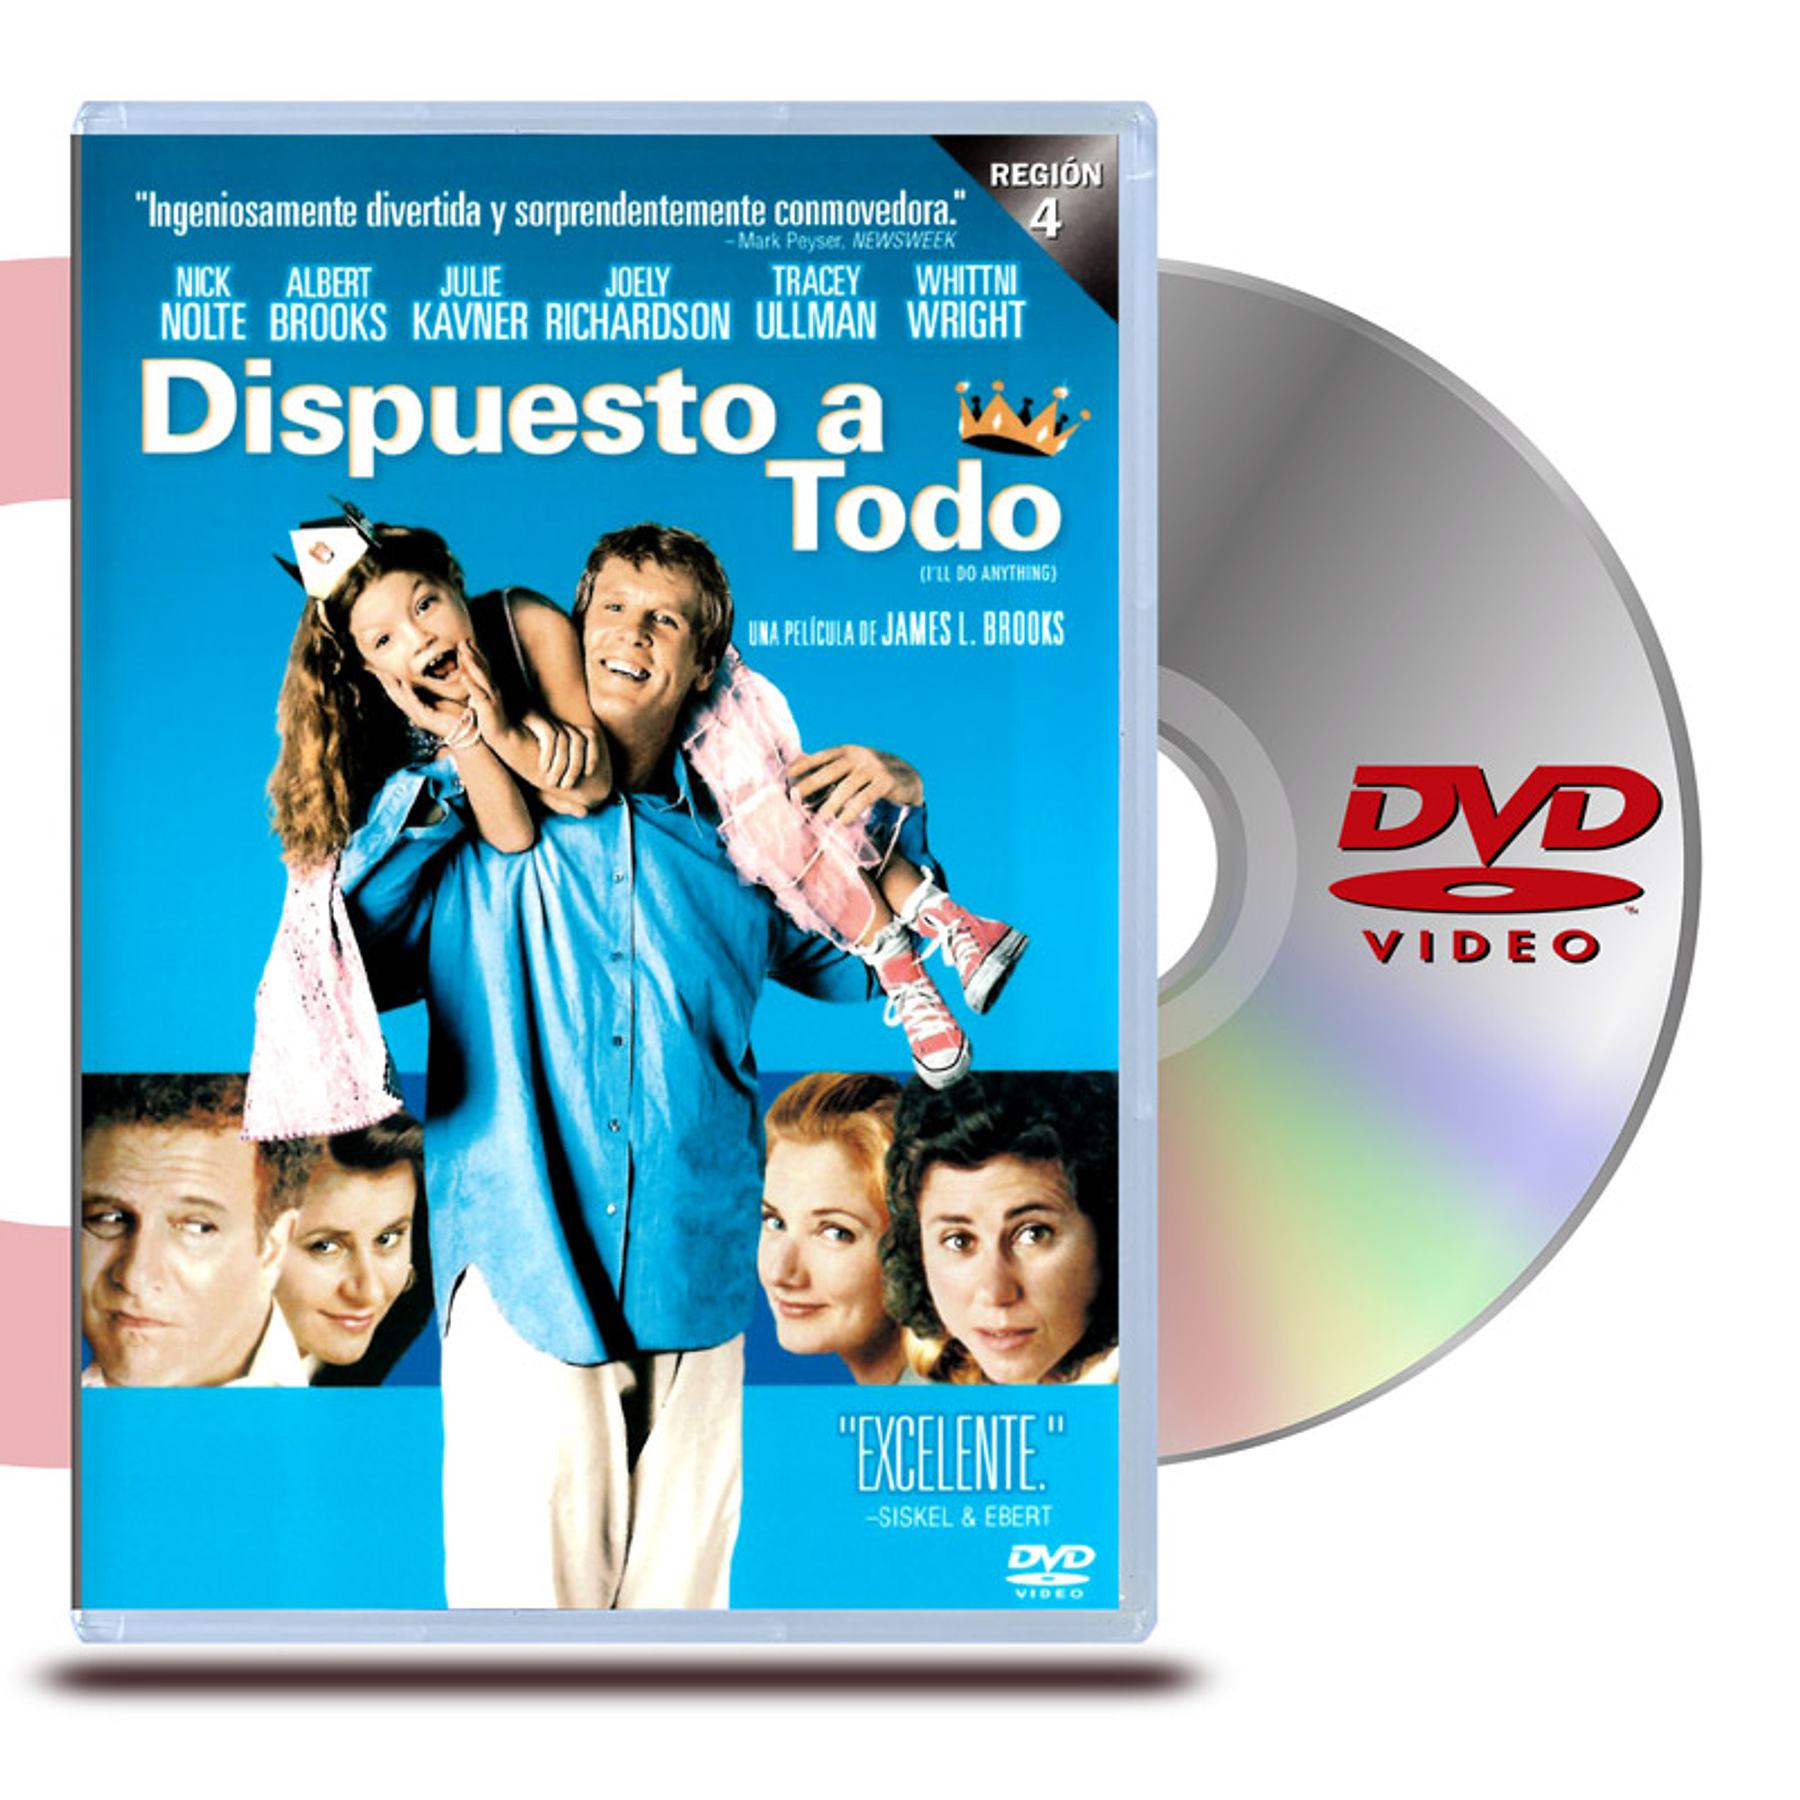 DVD DISPUESTO A TODO